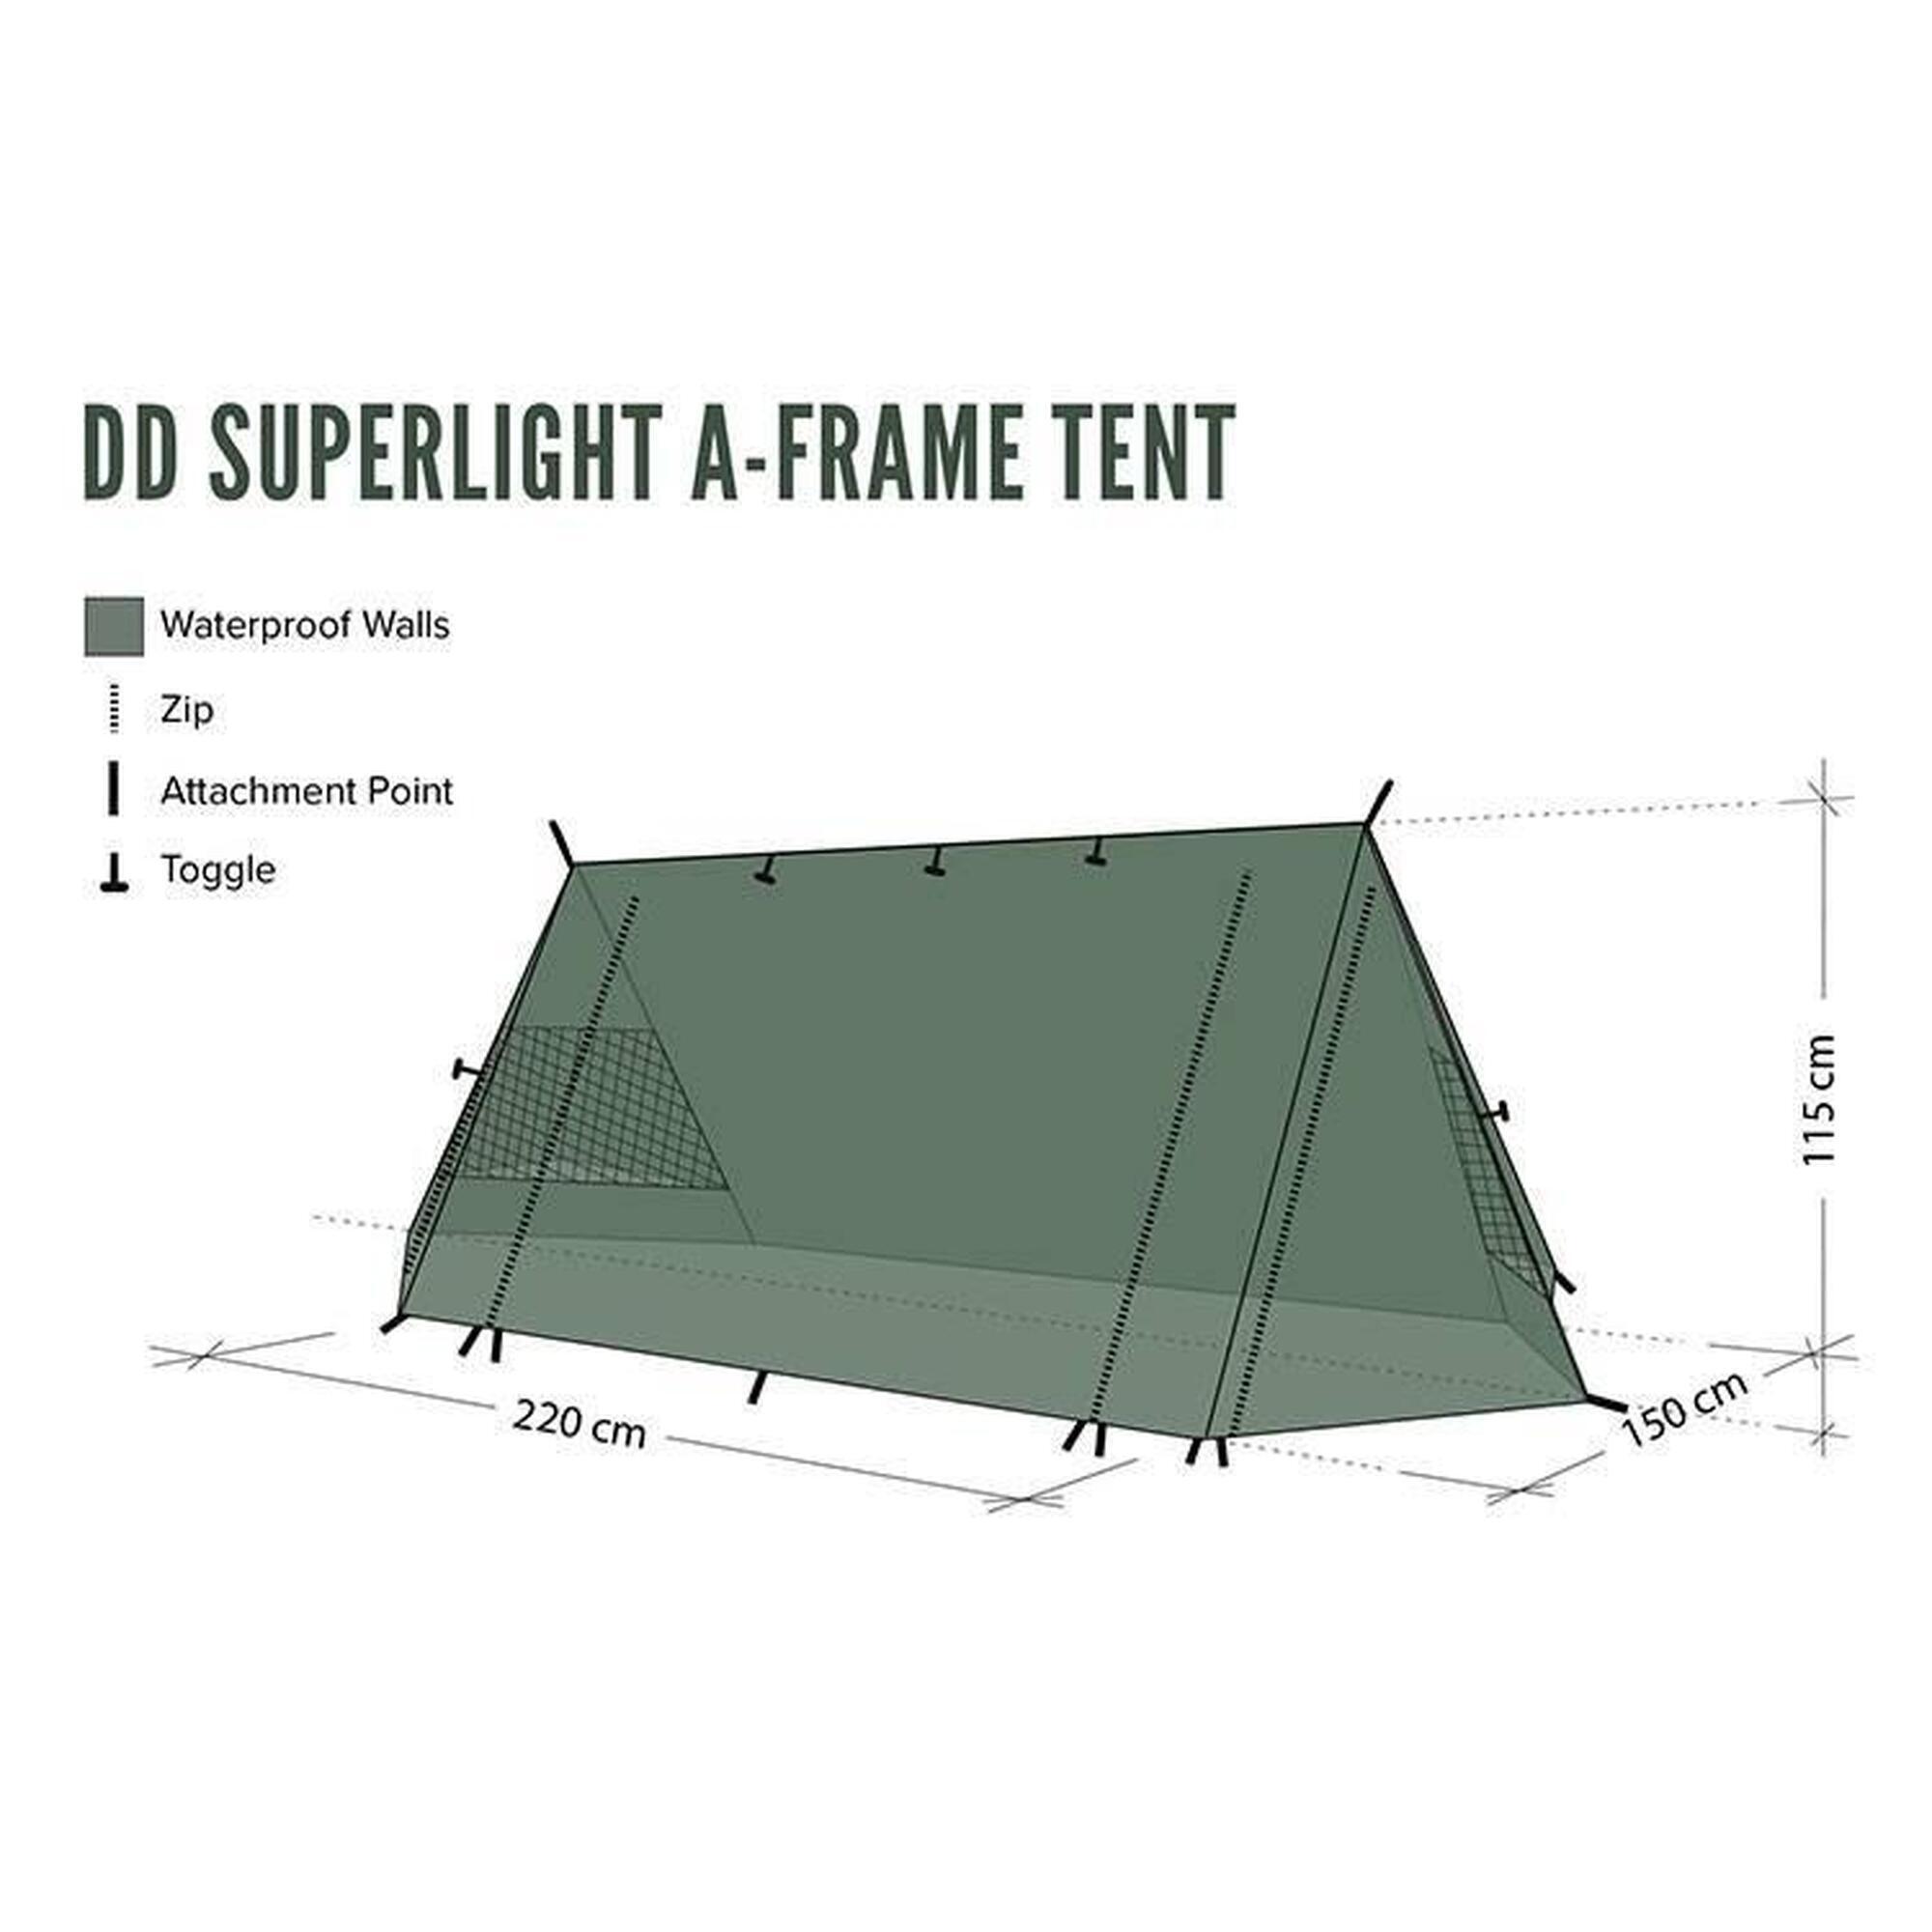 DD Hammocks Superlight A-Frame Tent Tunneltent